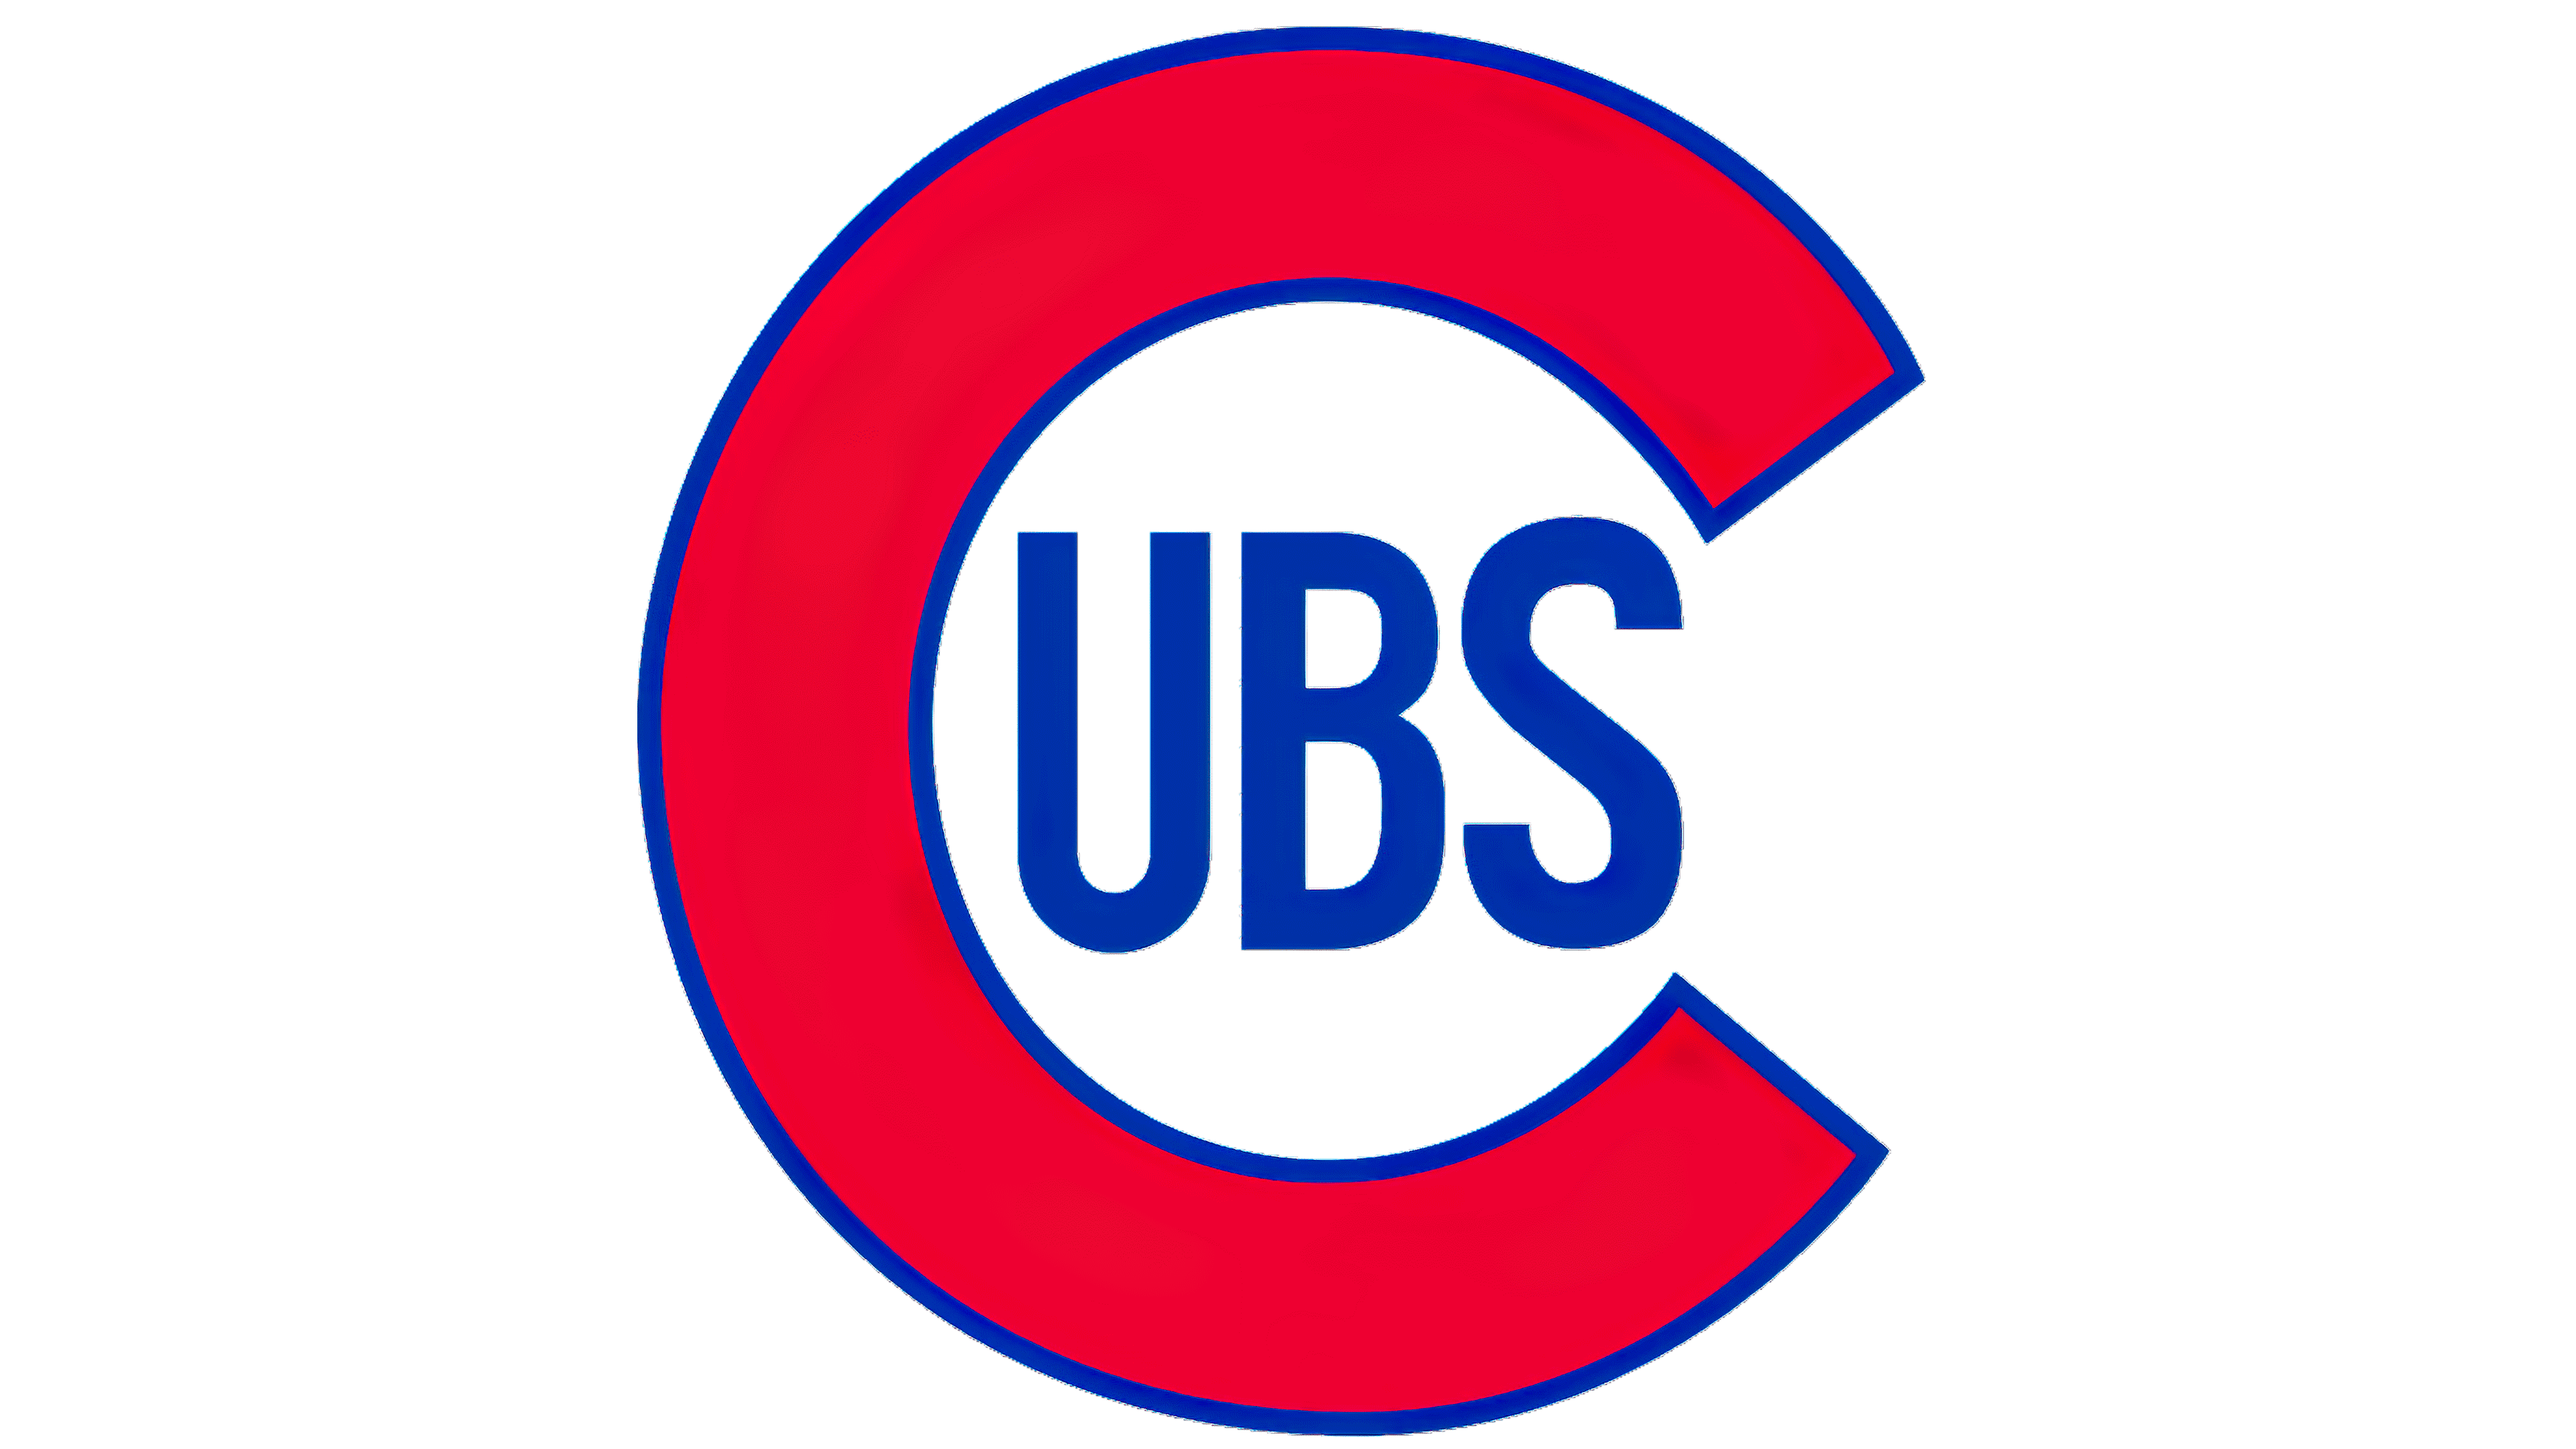 cubs logos